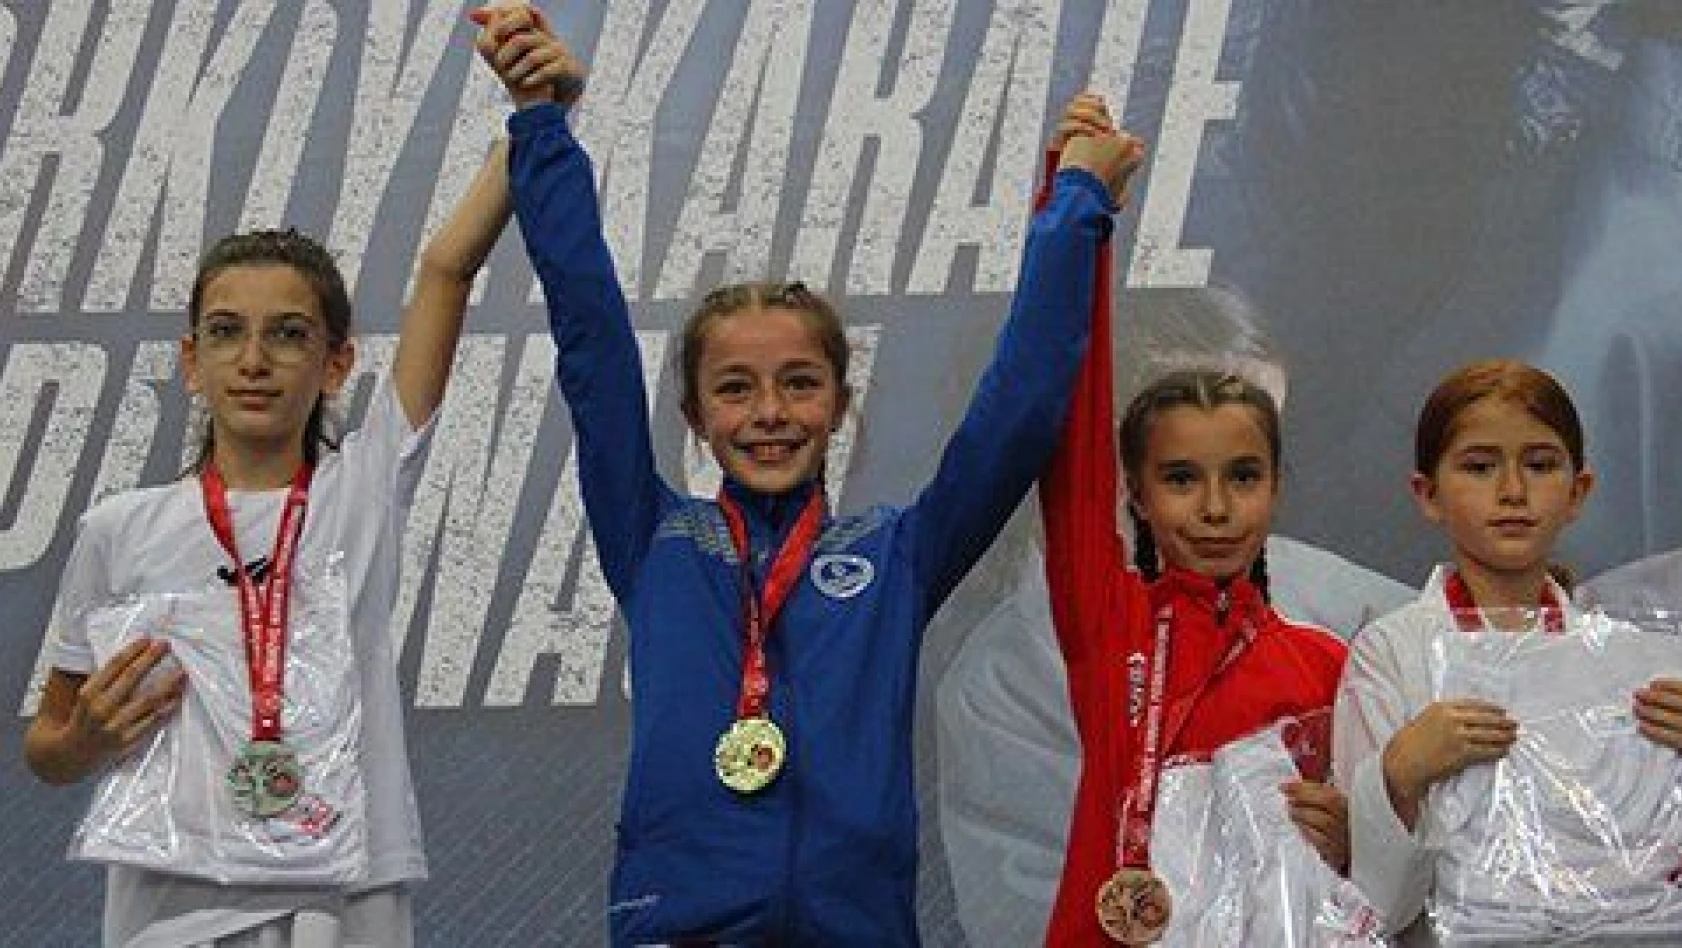 Türkiye Yıldızlar Karate Şampiyonası sona erdi